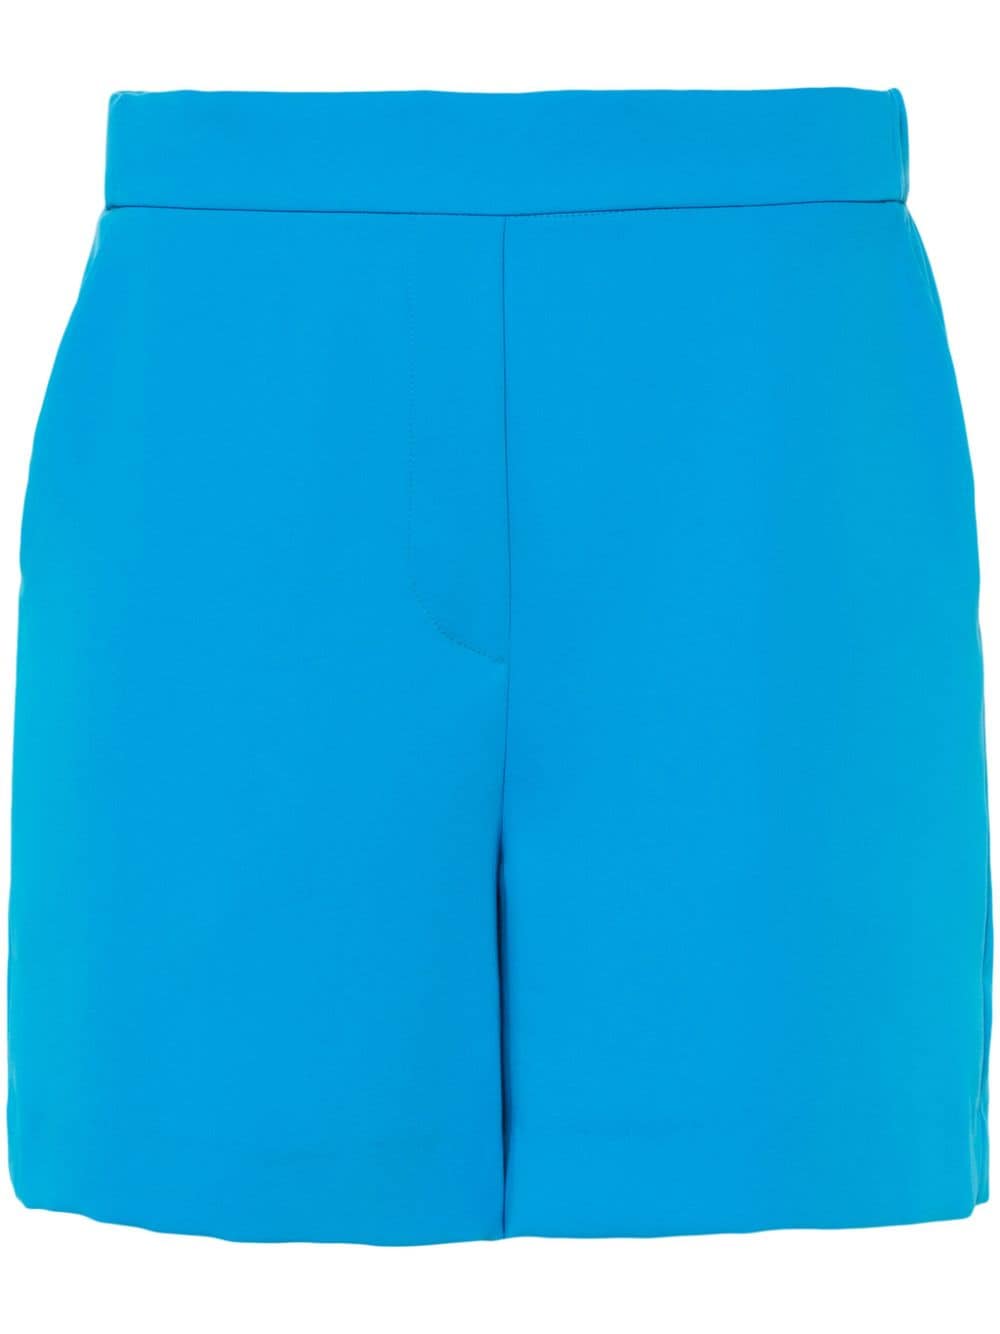 Blue fluid crepe shorts<BR/><BR/><BR/><BR/><BR/>